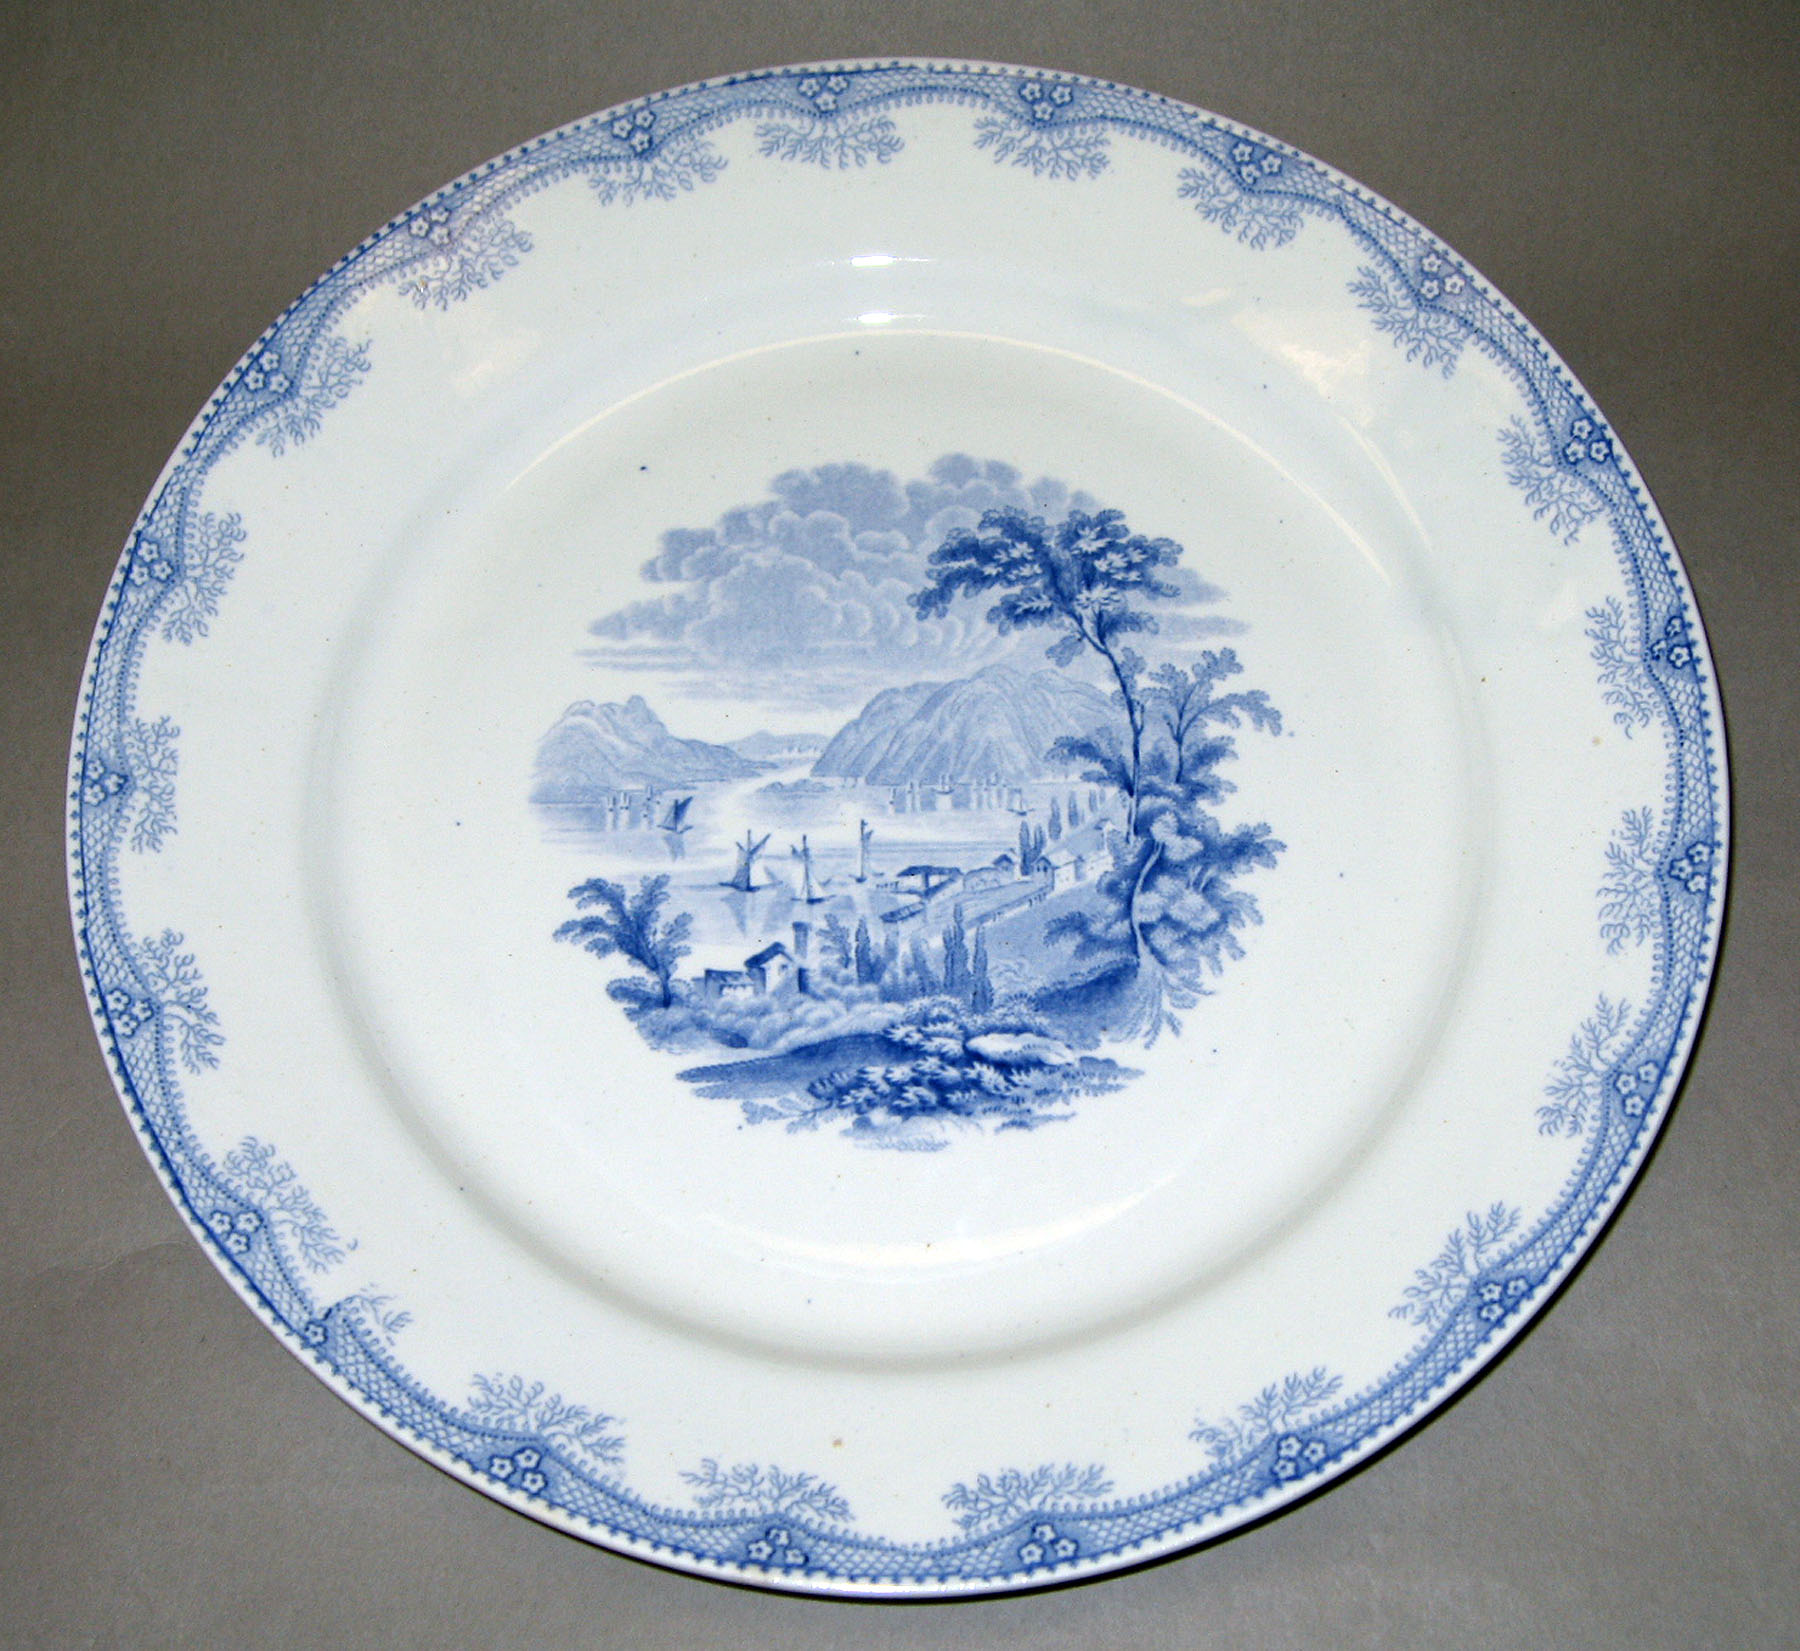 1965.2915.002 Ridgway earthenware plate